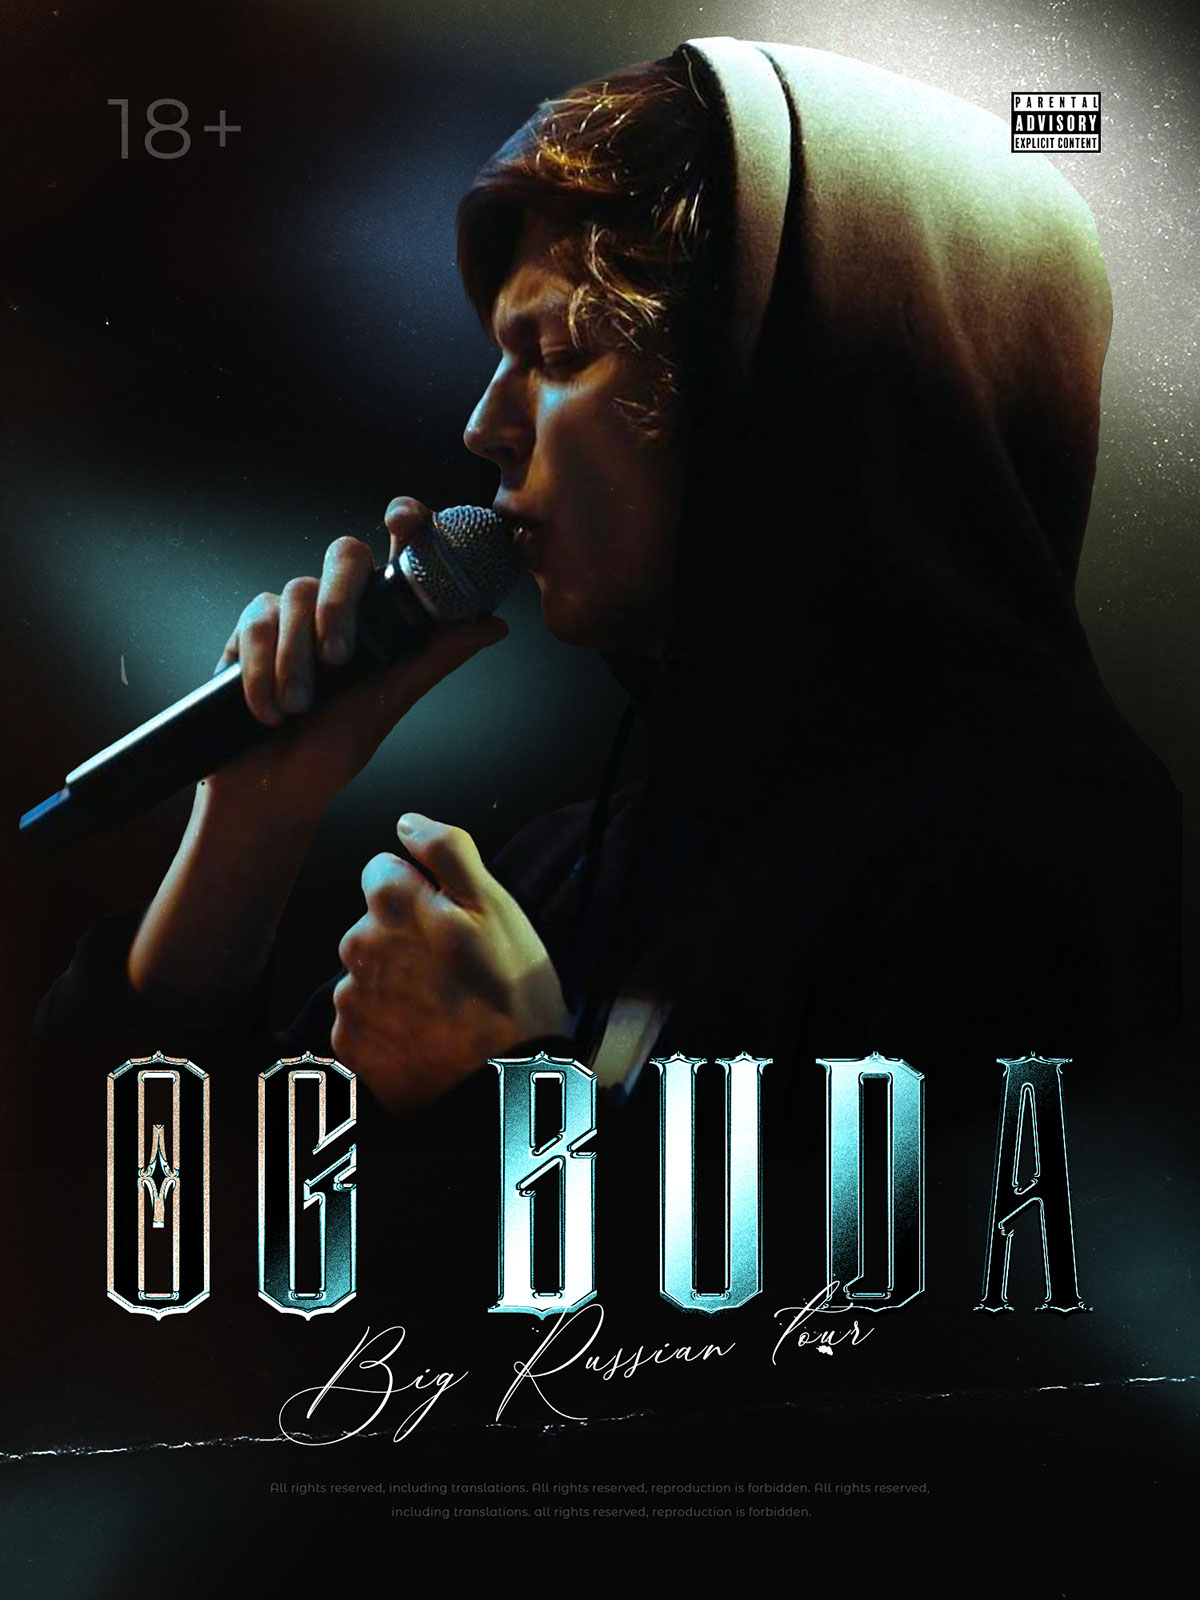 Poster OG BUDA in Ps rendition image